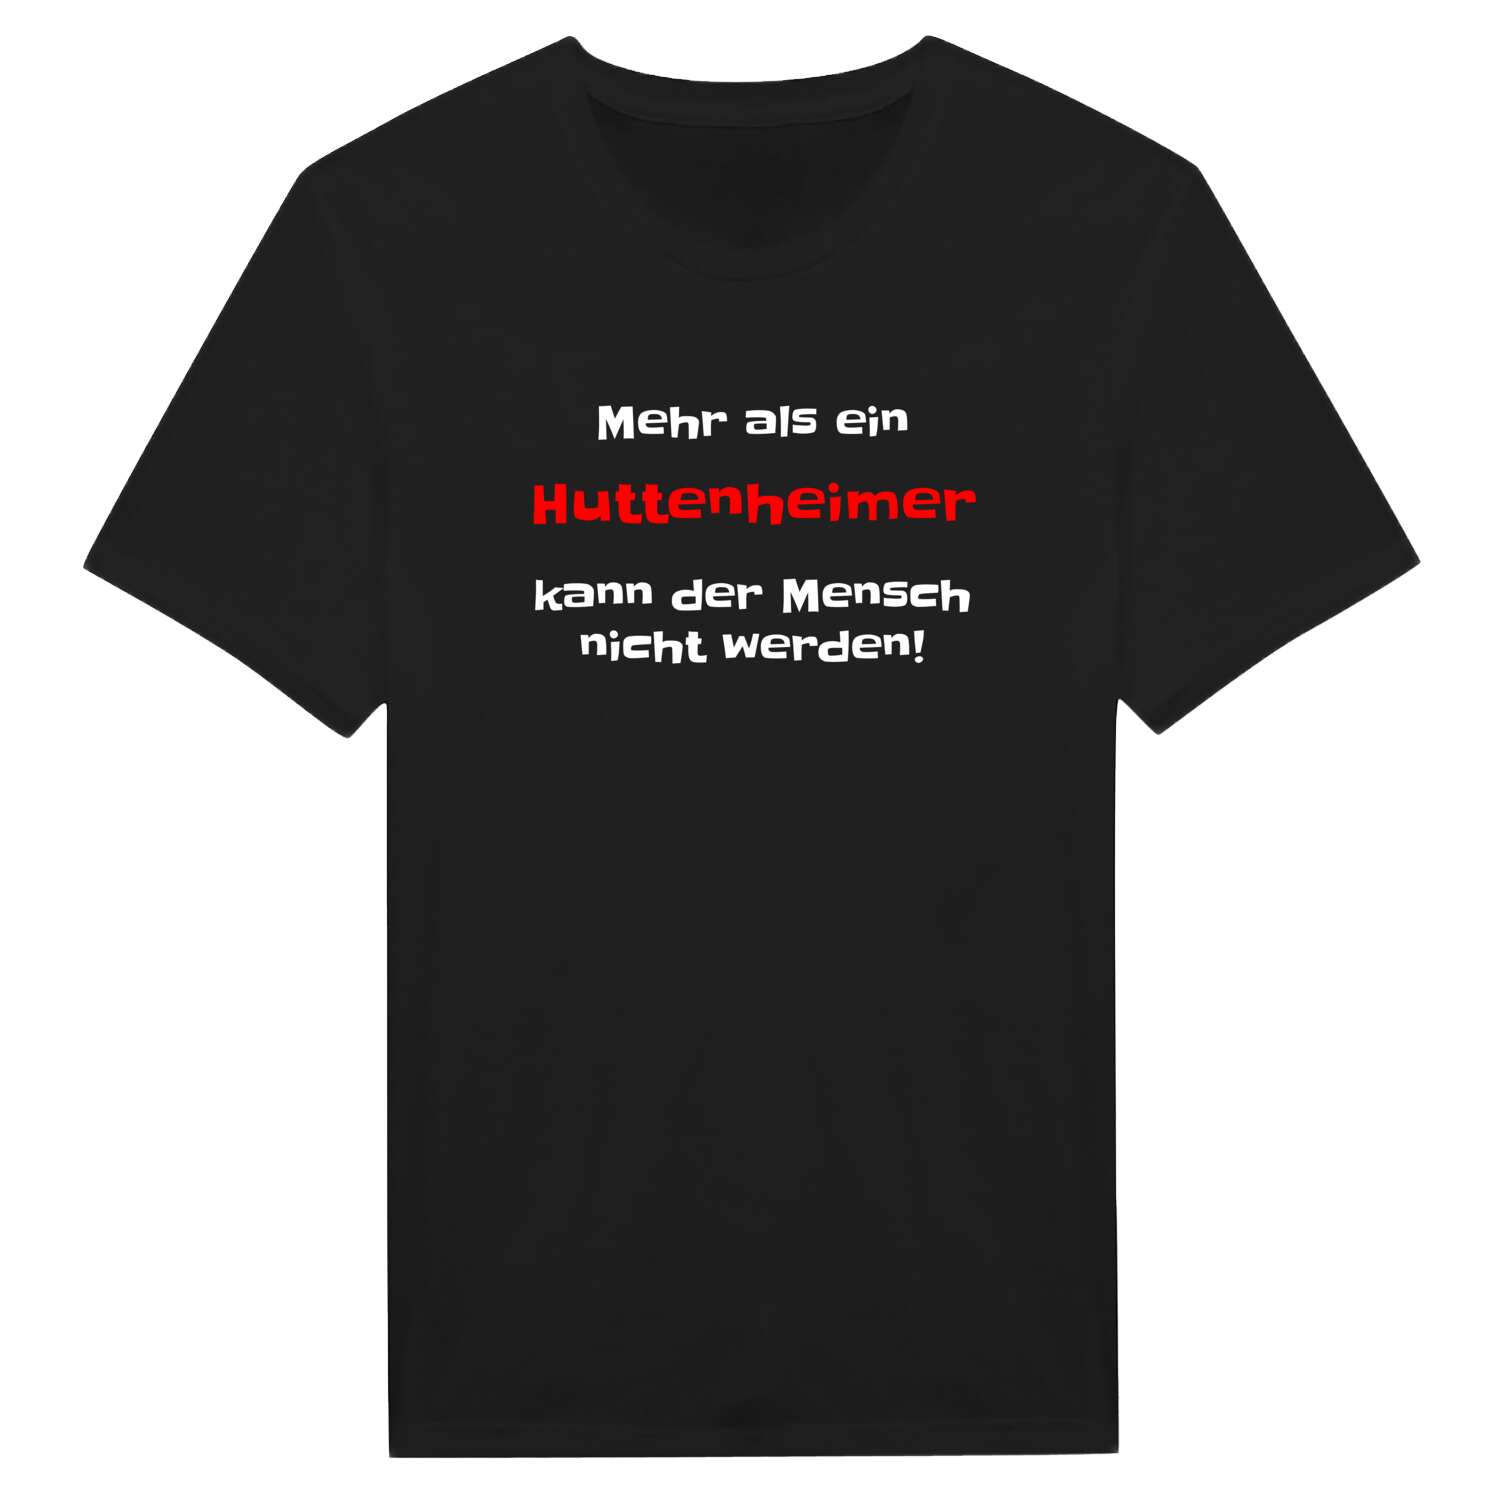 Huttenheim T-Shirt »Mehr als ein«